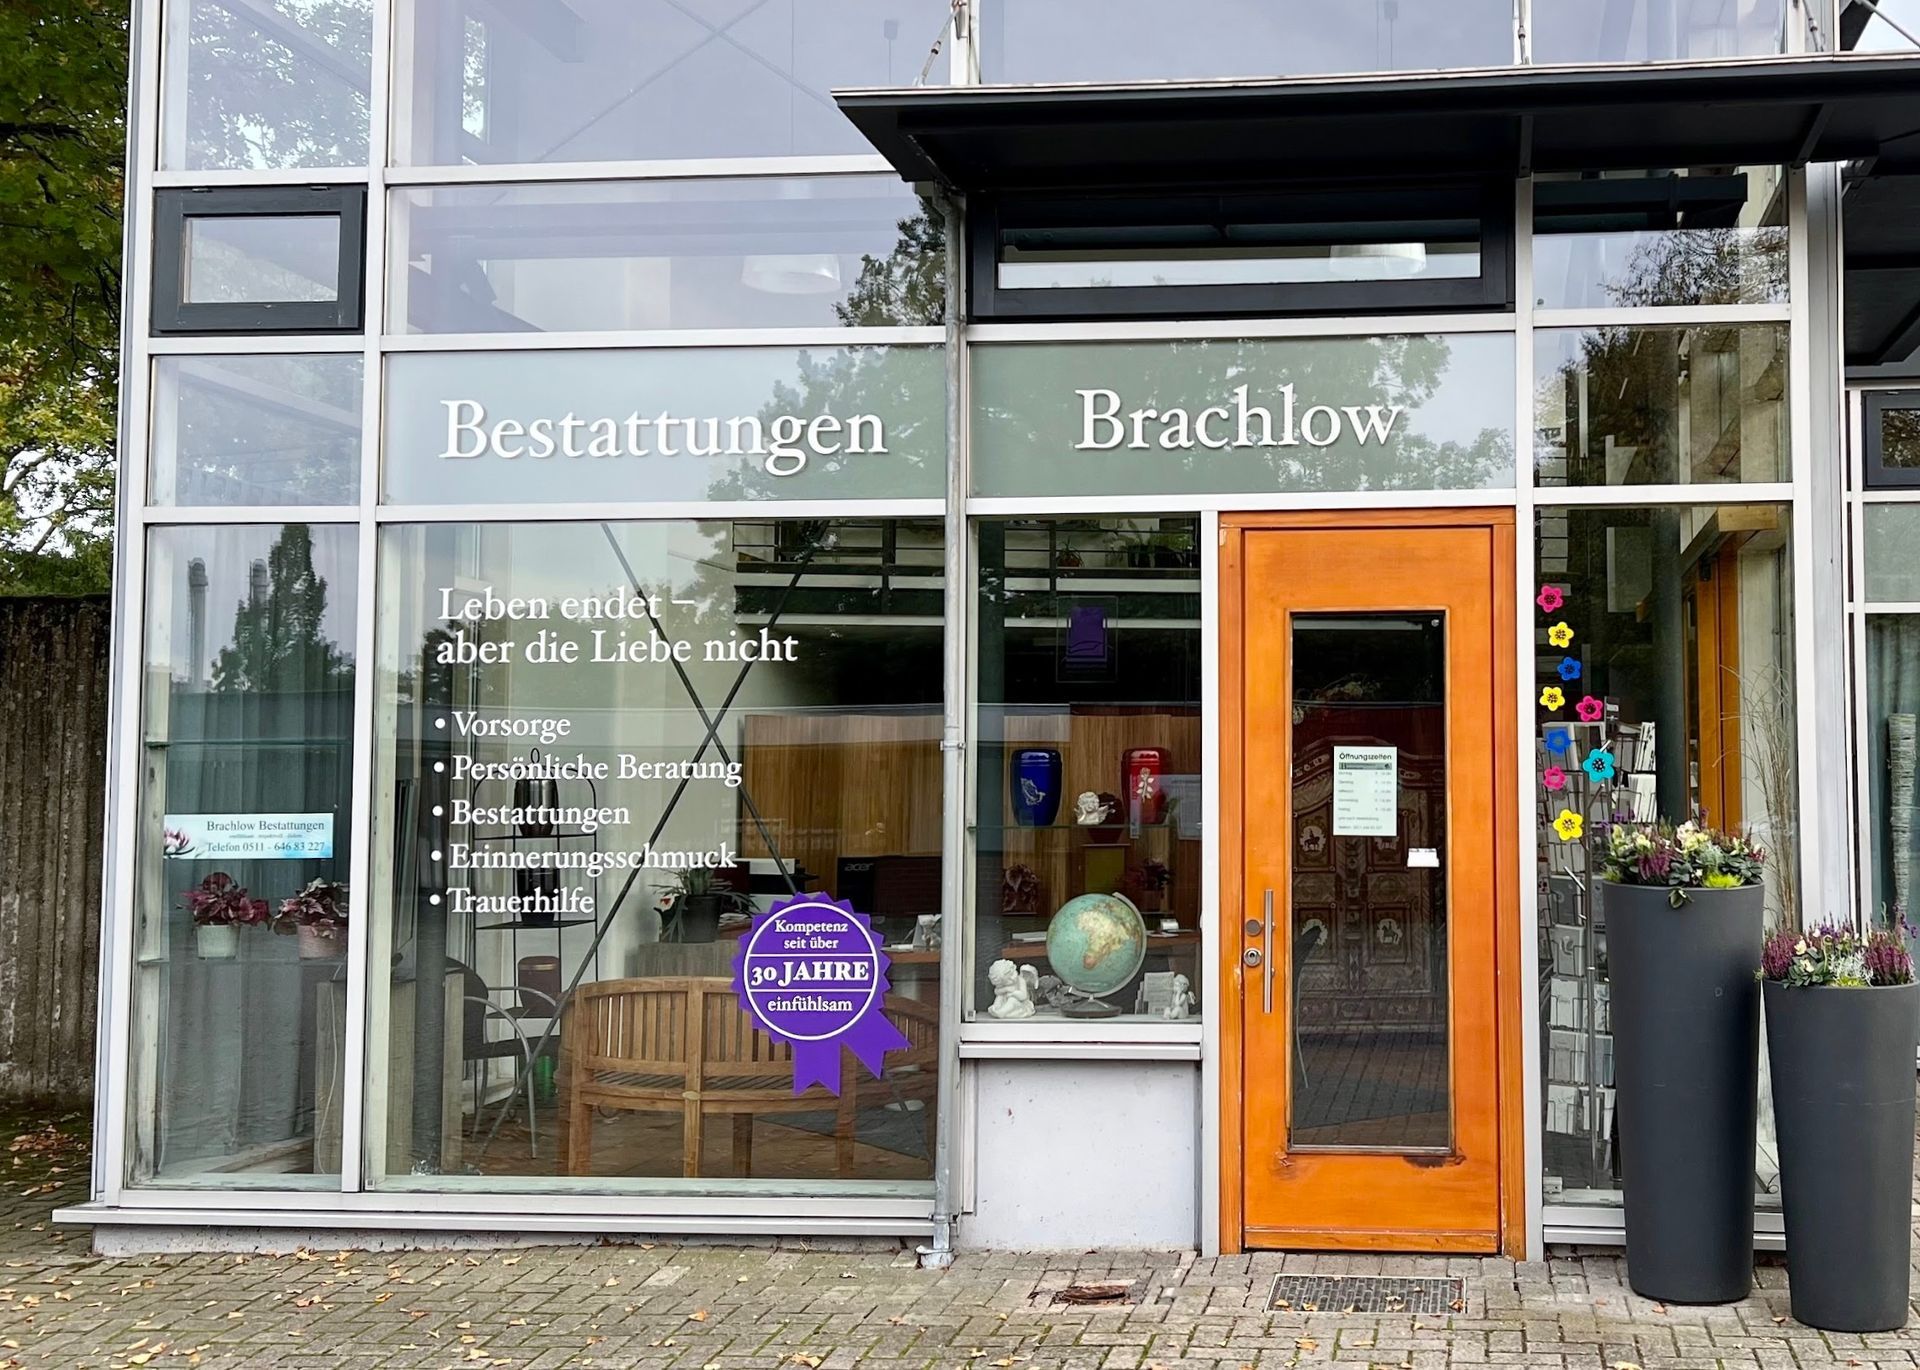 Brachlow Bestattungen Hannover - Der Bestatter